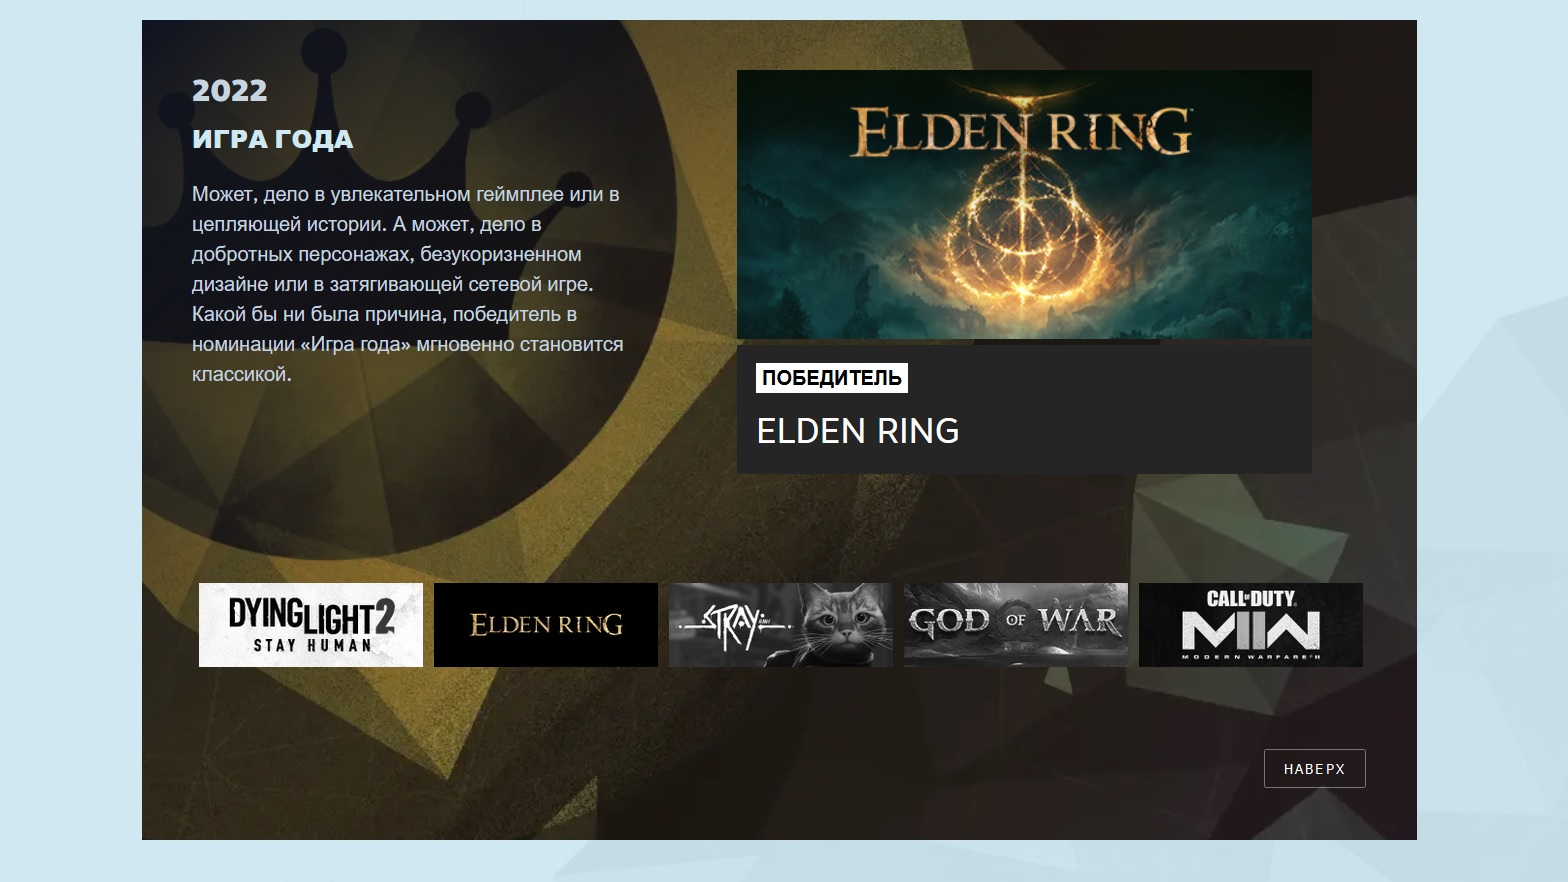 SteamDB составил список самых рейтинговых игр года - ELDEN RING  расположилась на 146 месте